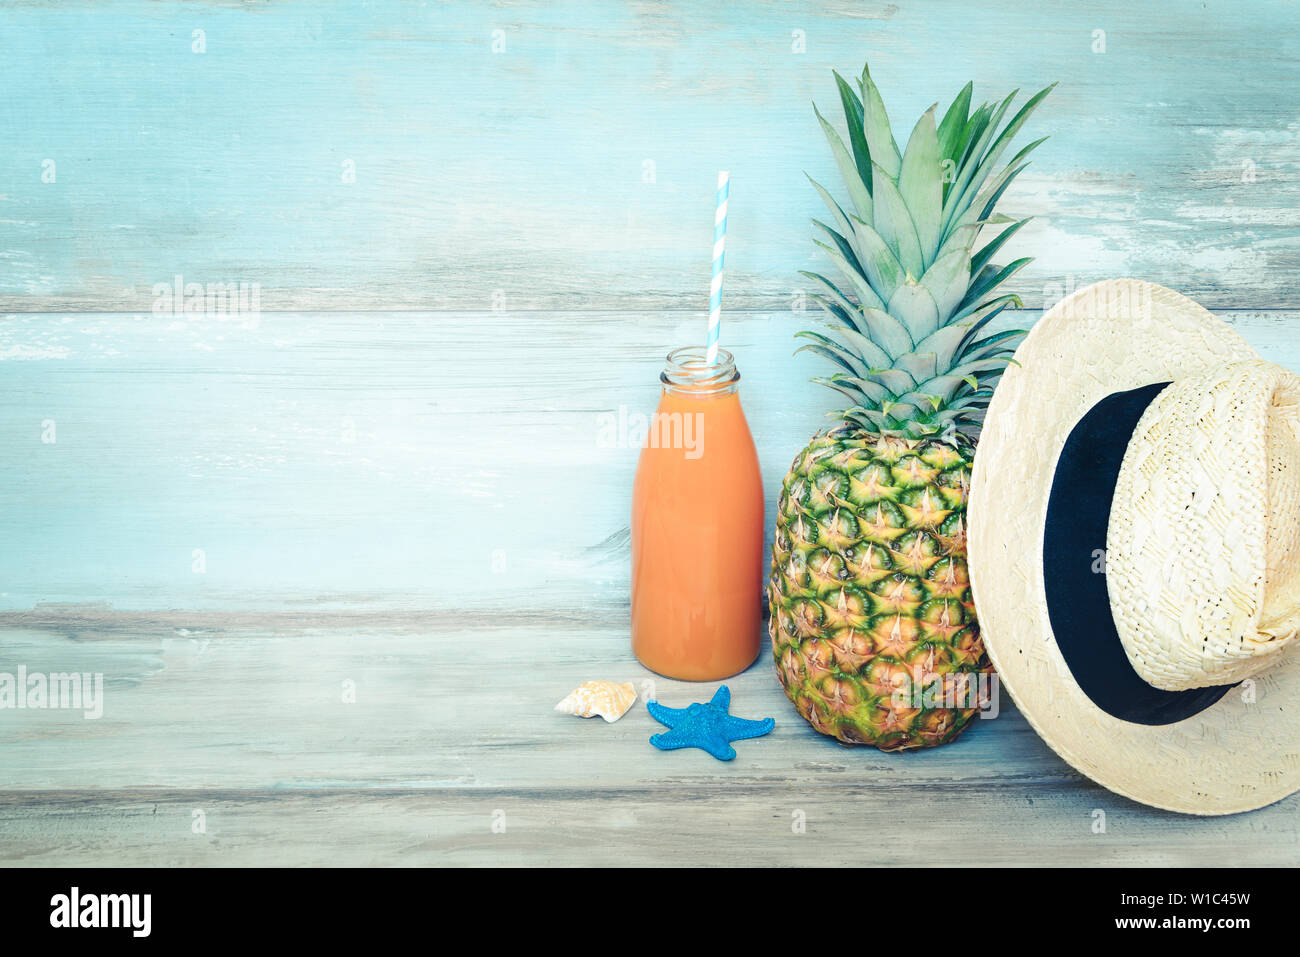 Sommer Konzept stillife - reife Ananas, Strohhut und eine Flasche multivitamin Saft vor einem blauen Holzmöbeln im Landhausstil Hintergrund. Stockfoto